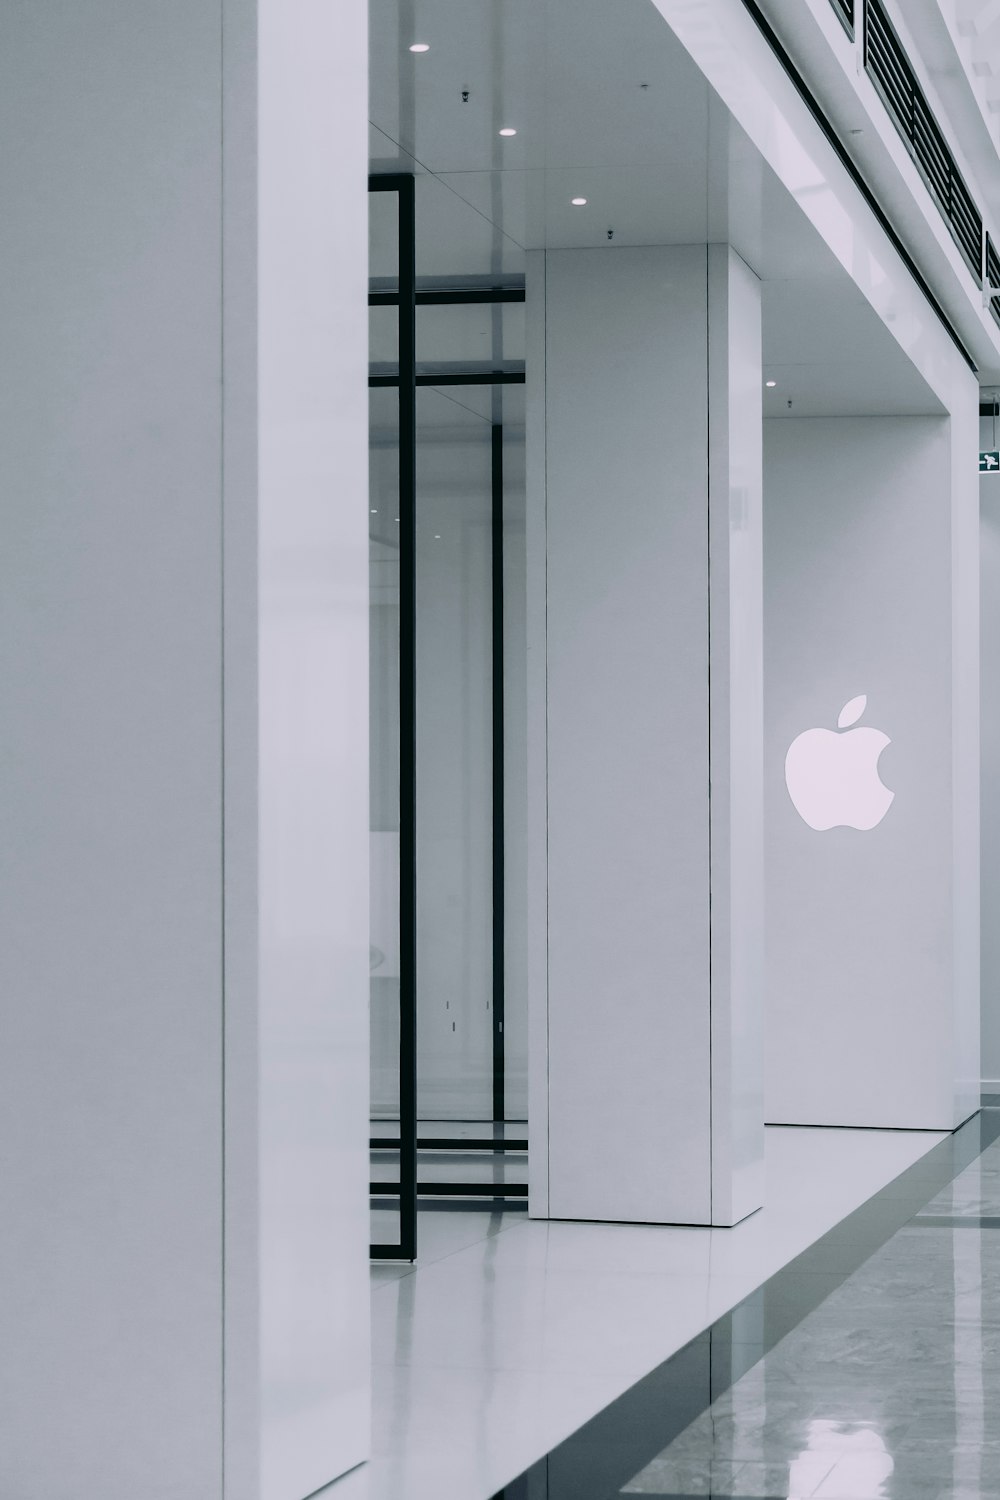 Logotipo de Apple en un edificio de hormigón